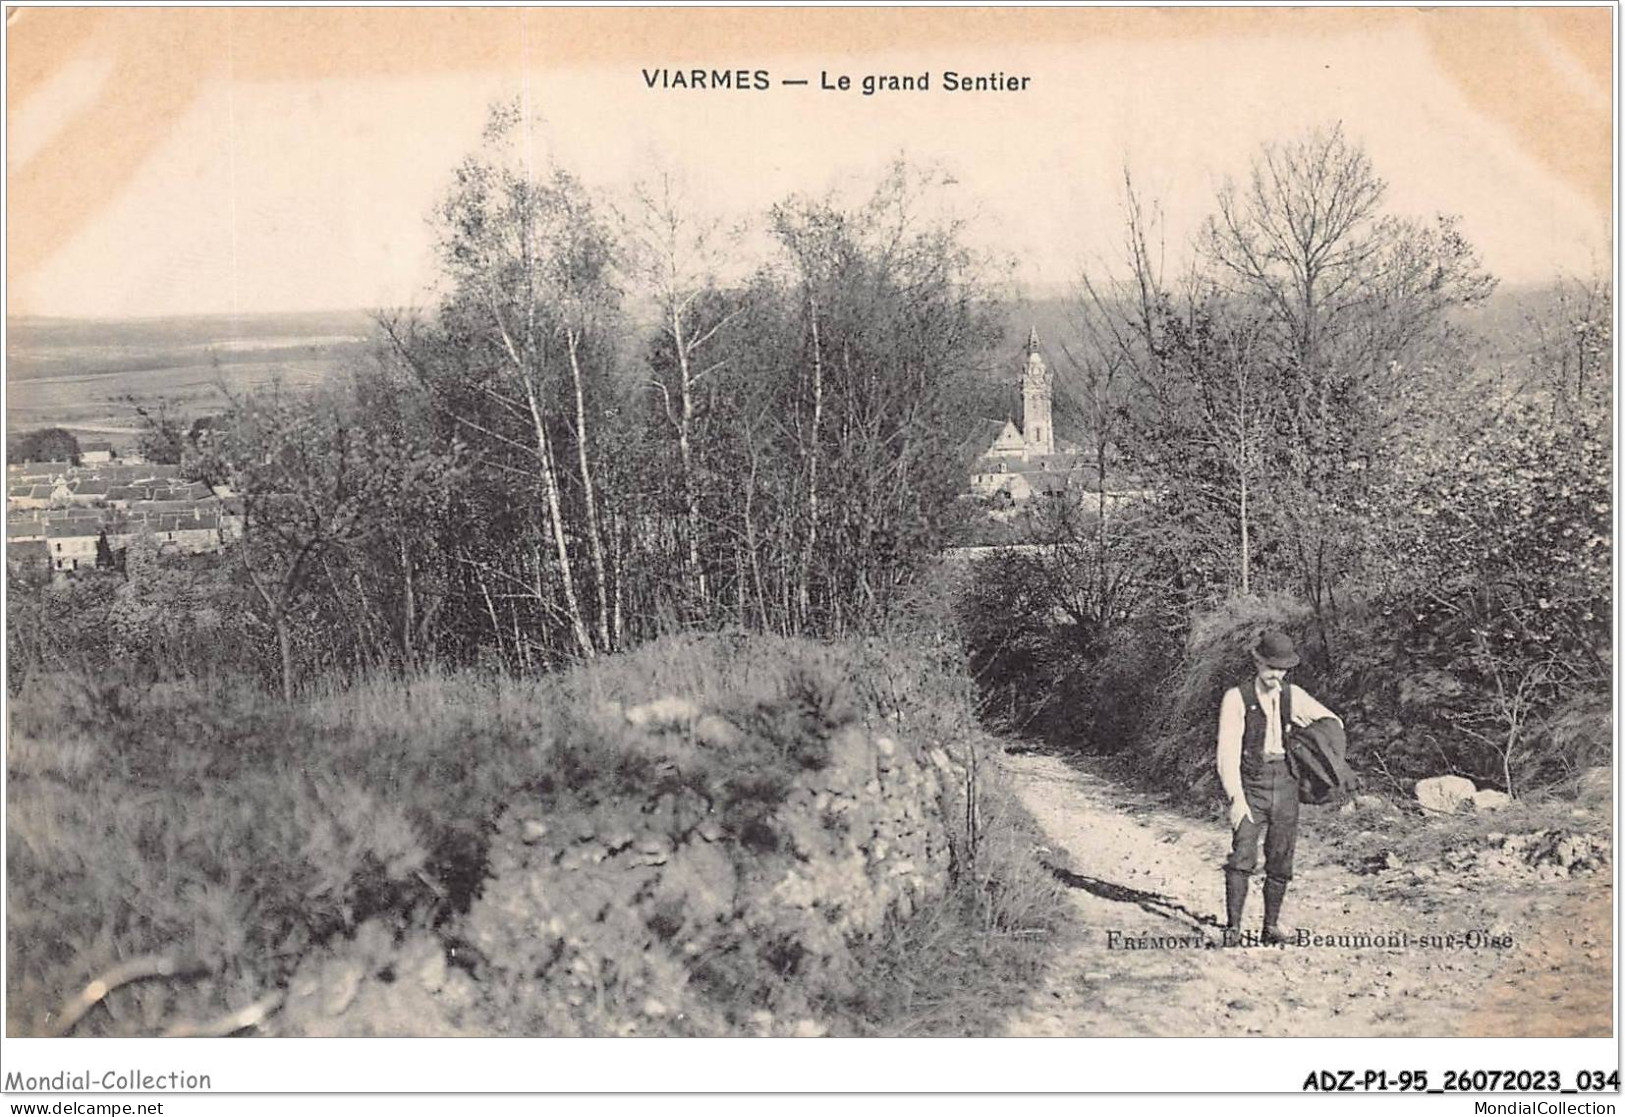 ADZP1-95-0018 - VIARMES - Le Grand Sentier - Viarmes